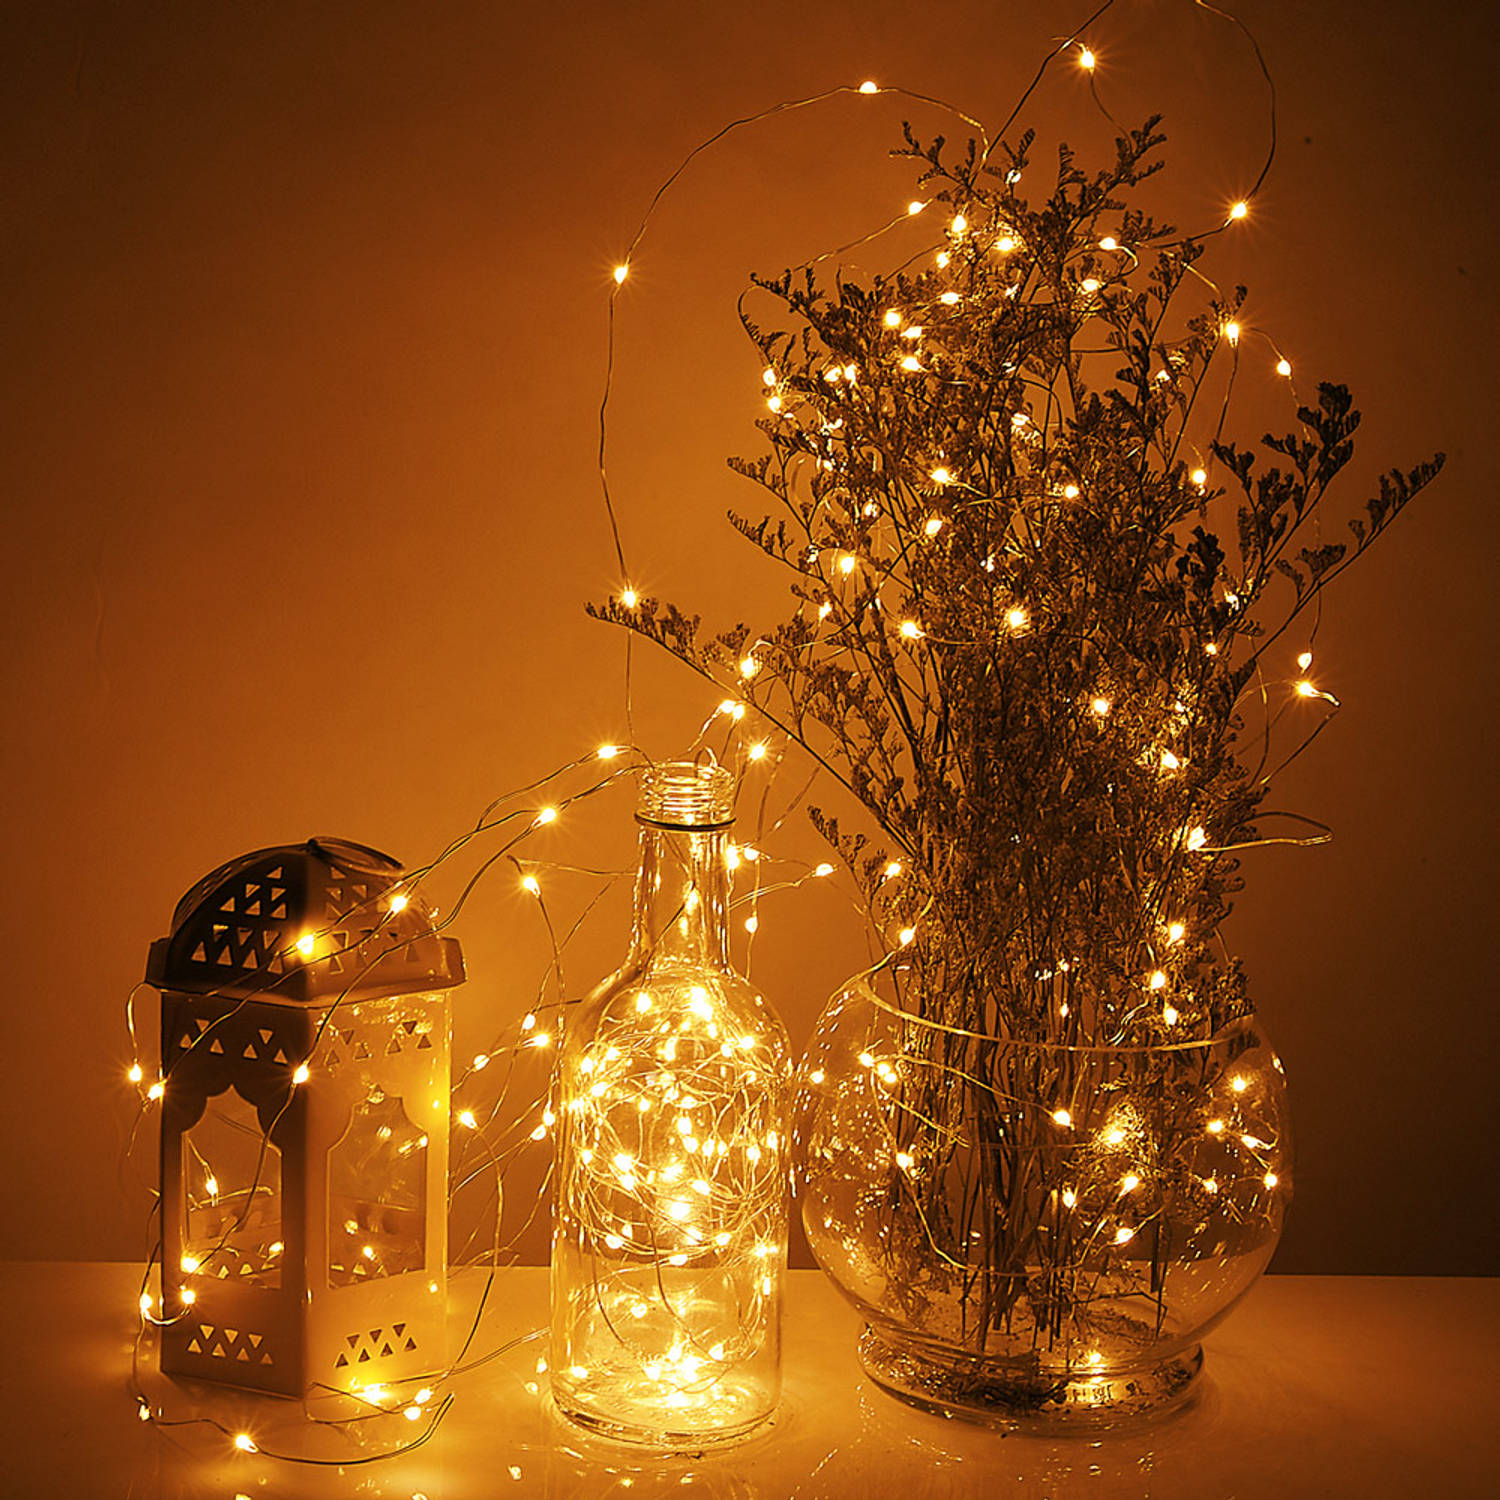 Draadverlichting, kerstverlichting, zilverdraad verlichting, Kerstverlichting